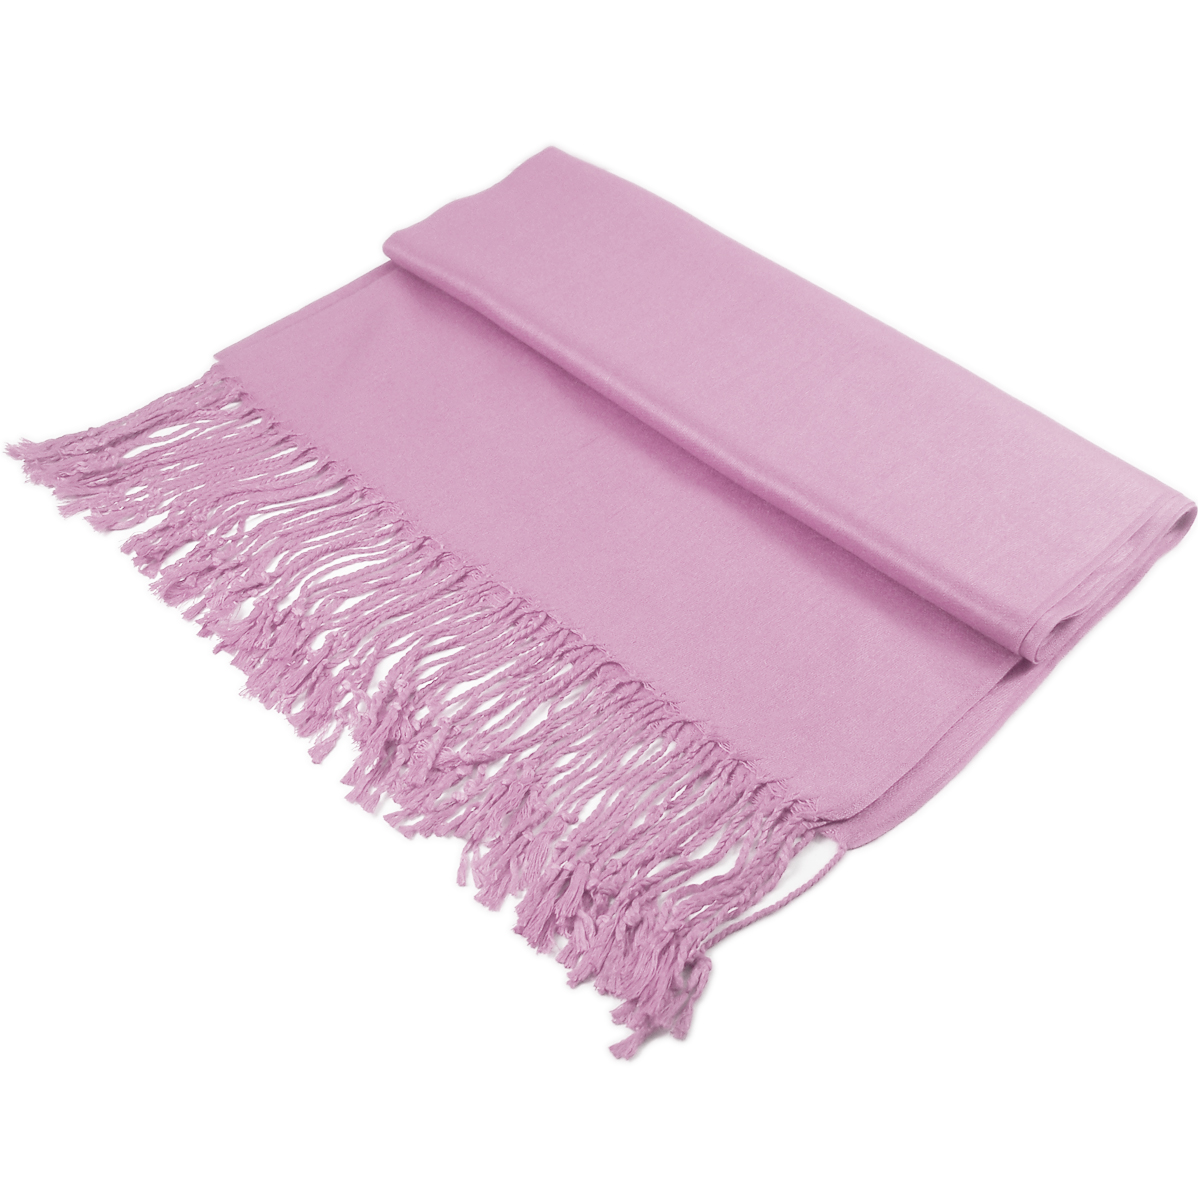 Solid Pashmina DXG18 Lilac [DXG18] - $4.95 : Wholesale scarves ...